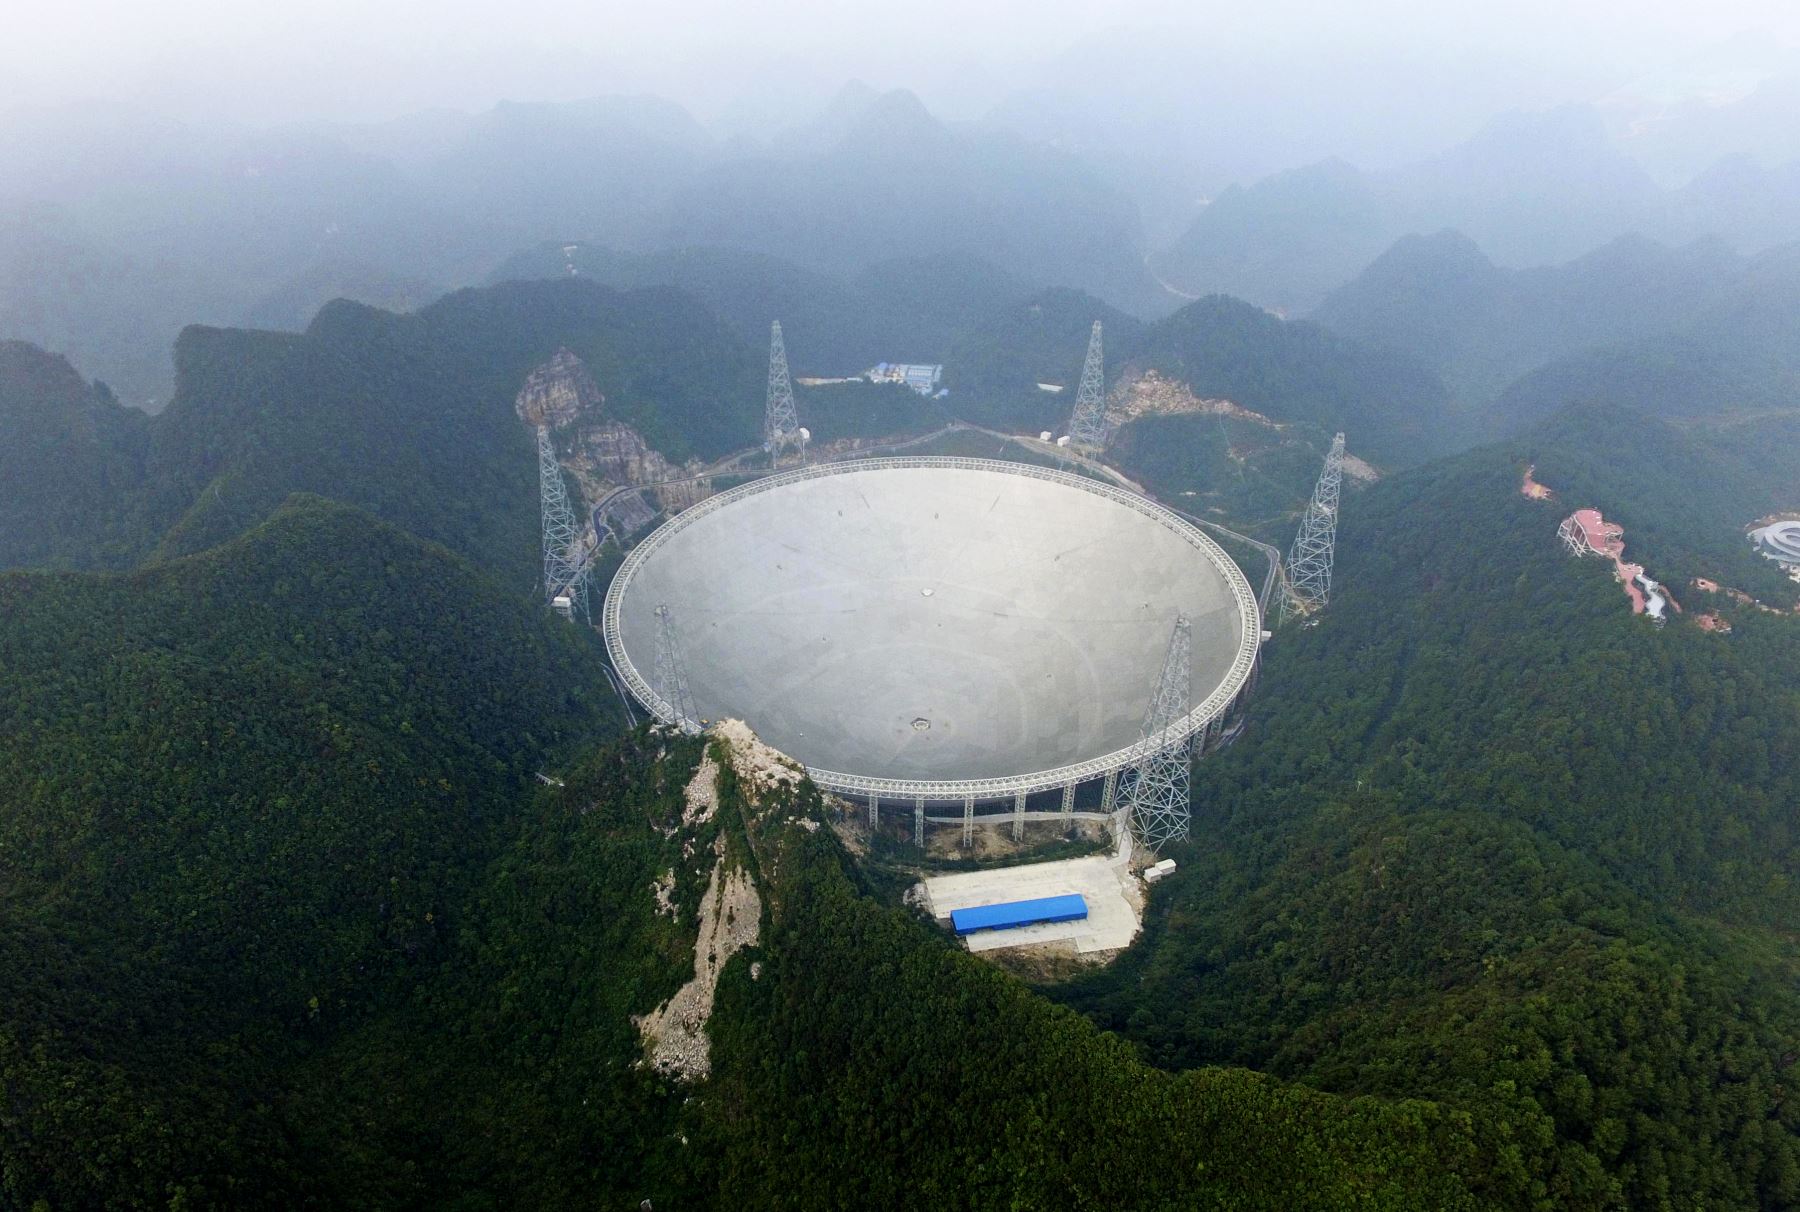 mayor radiotelescopio del mundo conocido por sus siglas en inglés FAST, está situado en una zona montañosa del condado de Pingtang. Foto: AFP